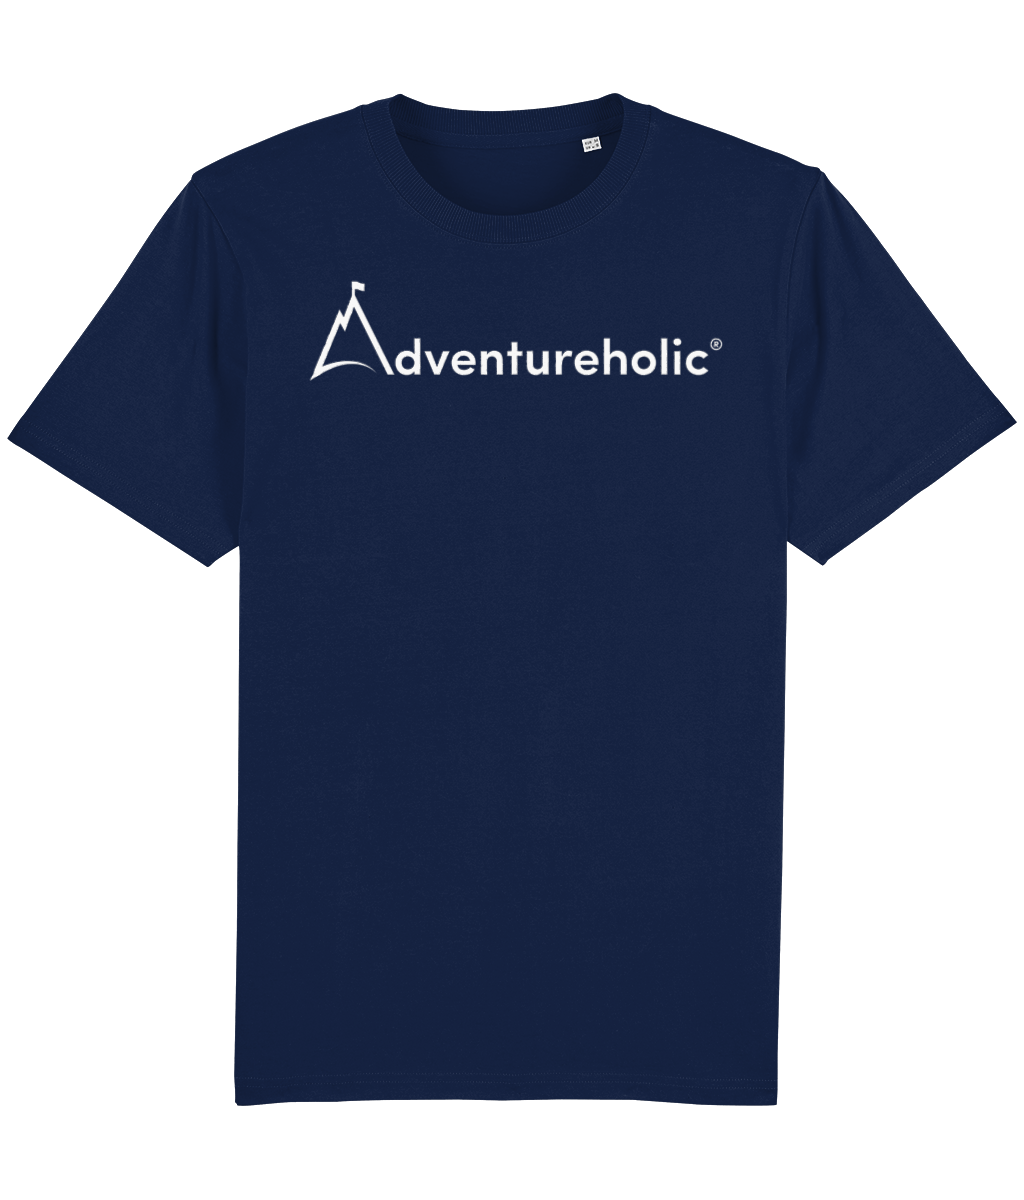 Adventureholic Unisex Tee-Shirt - White Print